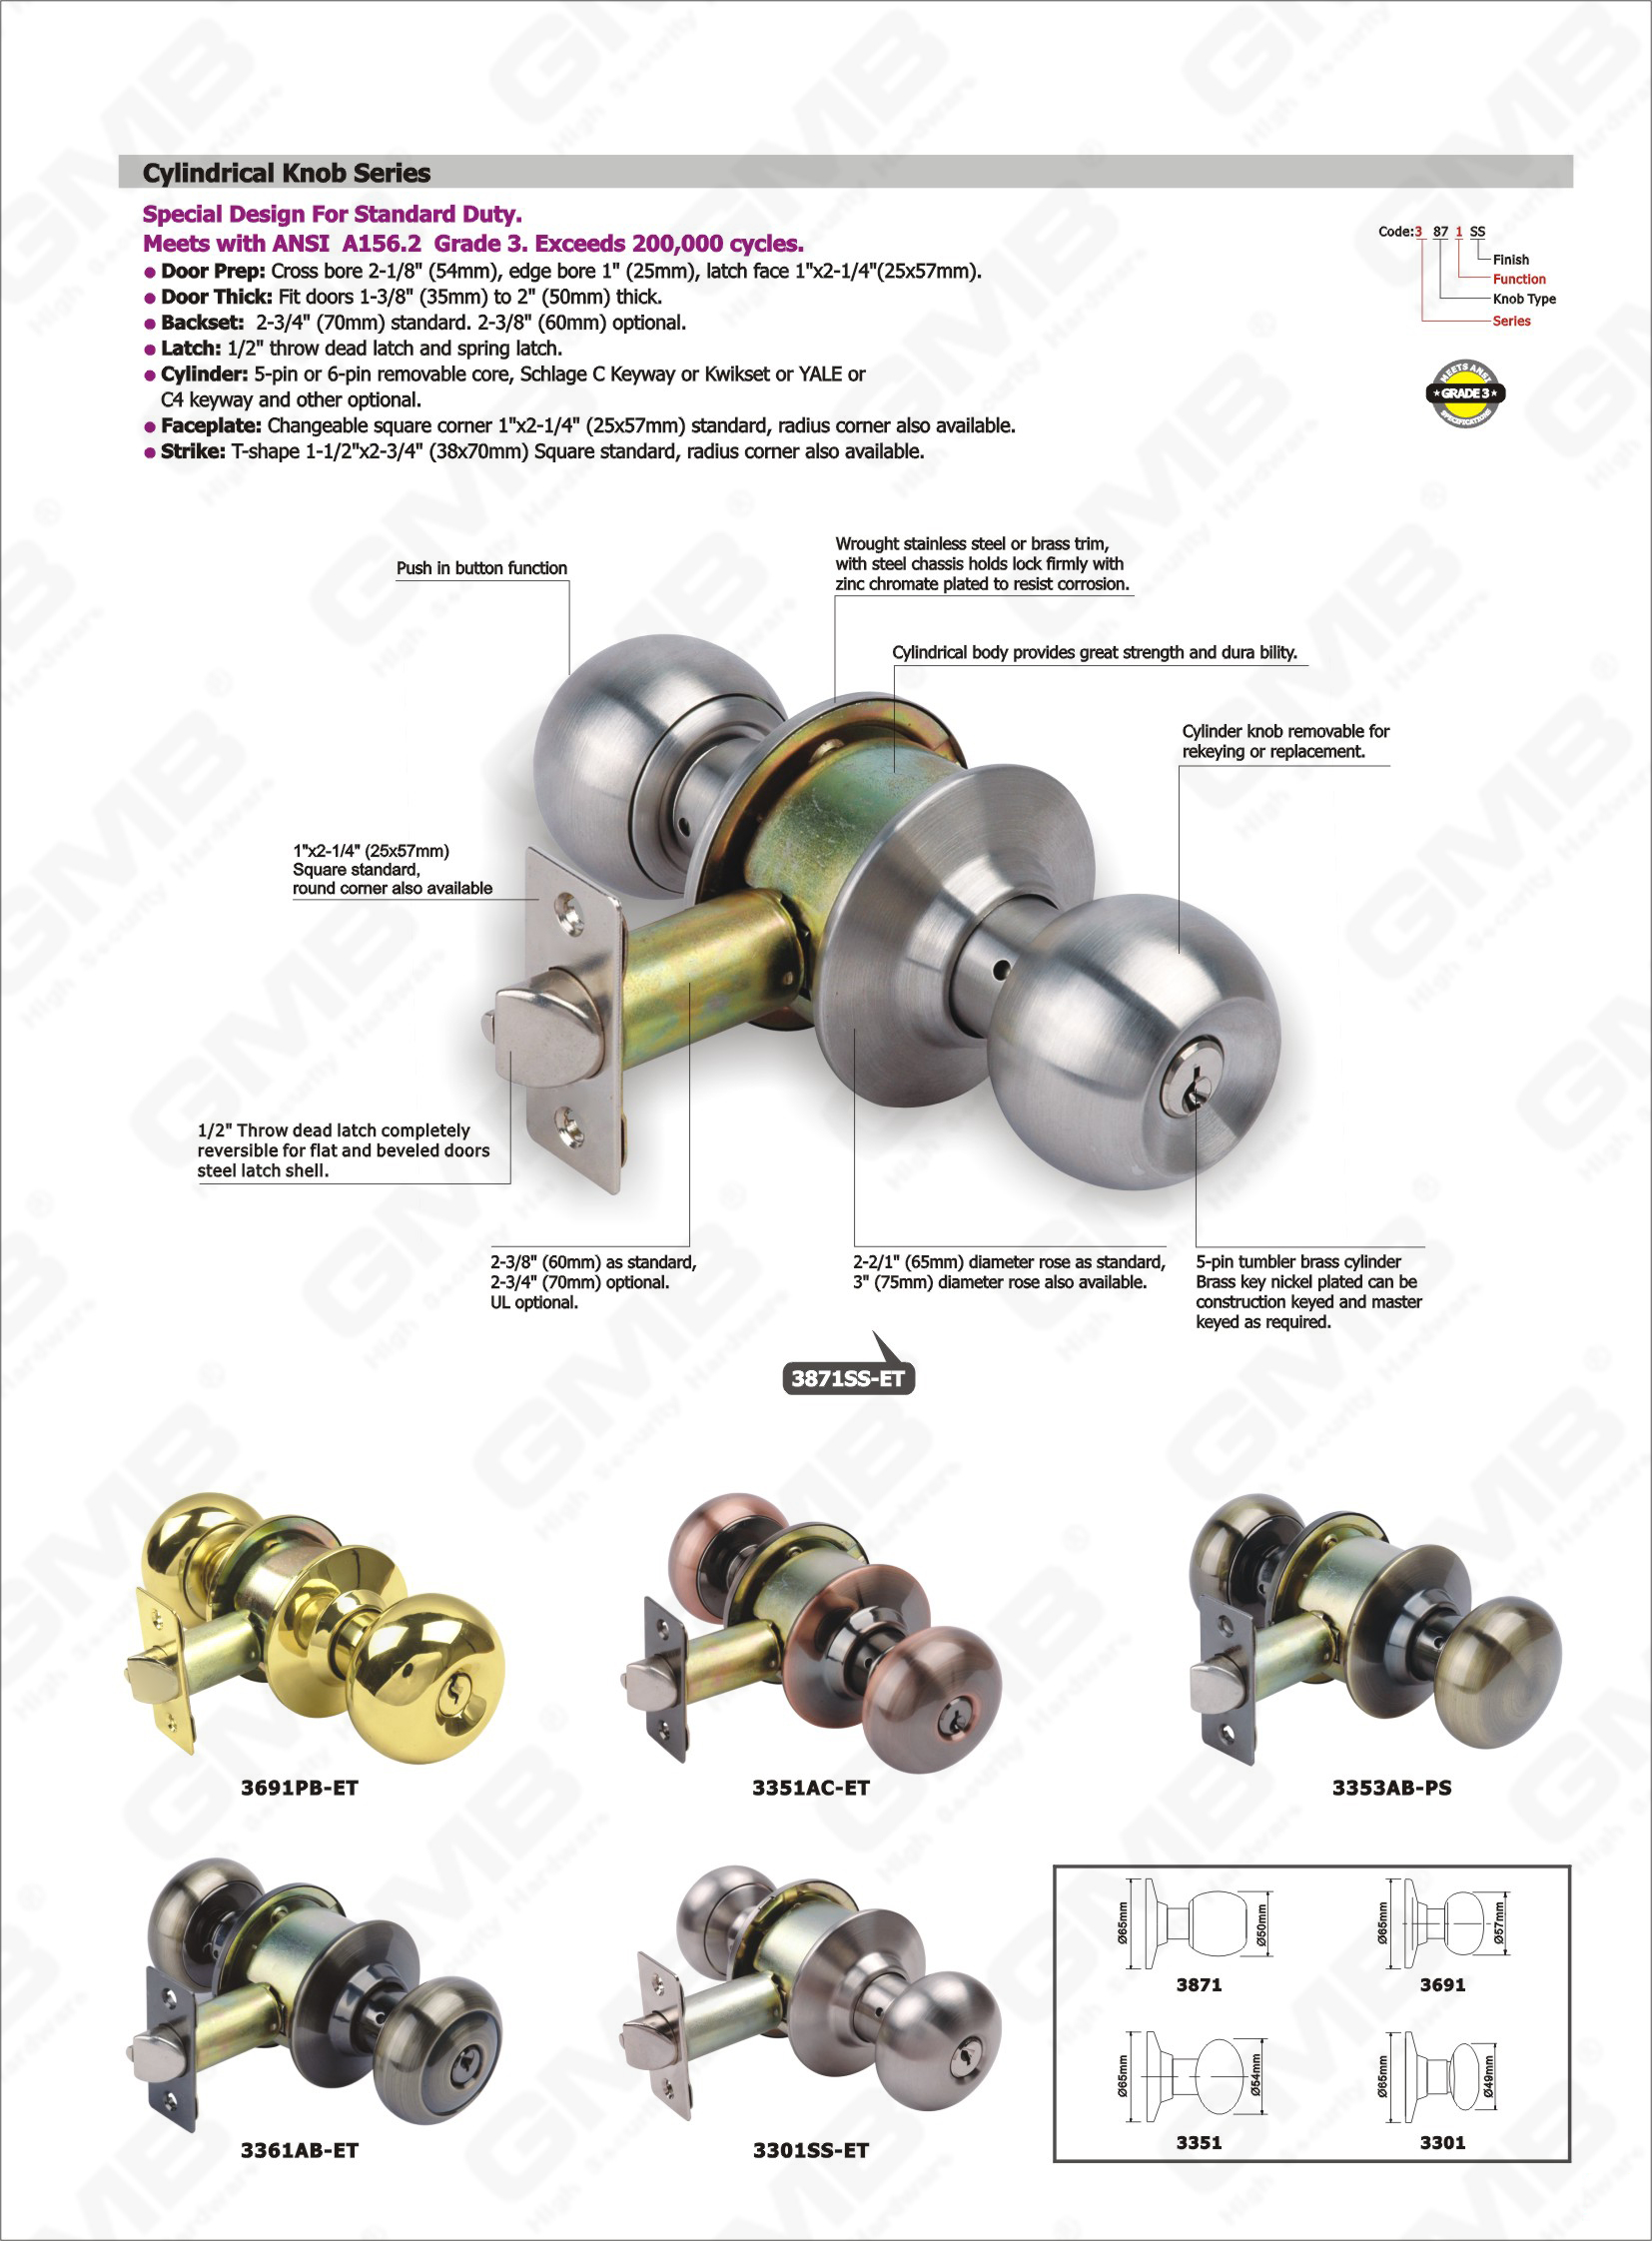 Bouton de cylindre amovible pour rekeying ou remplacement conception spéciale ANSI standard série de verrouillage cylindrique (3301SS-ET)